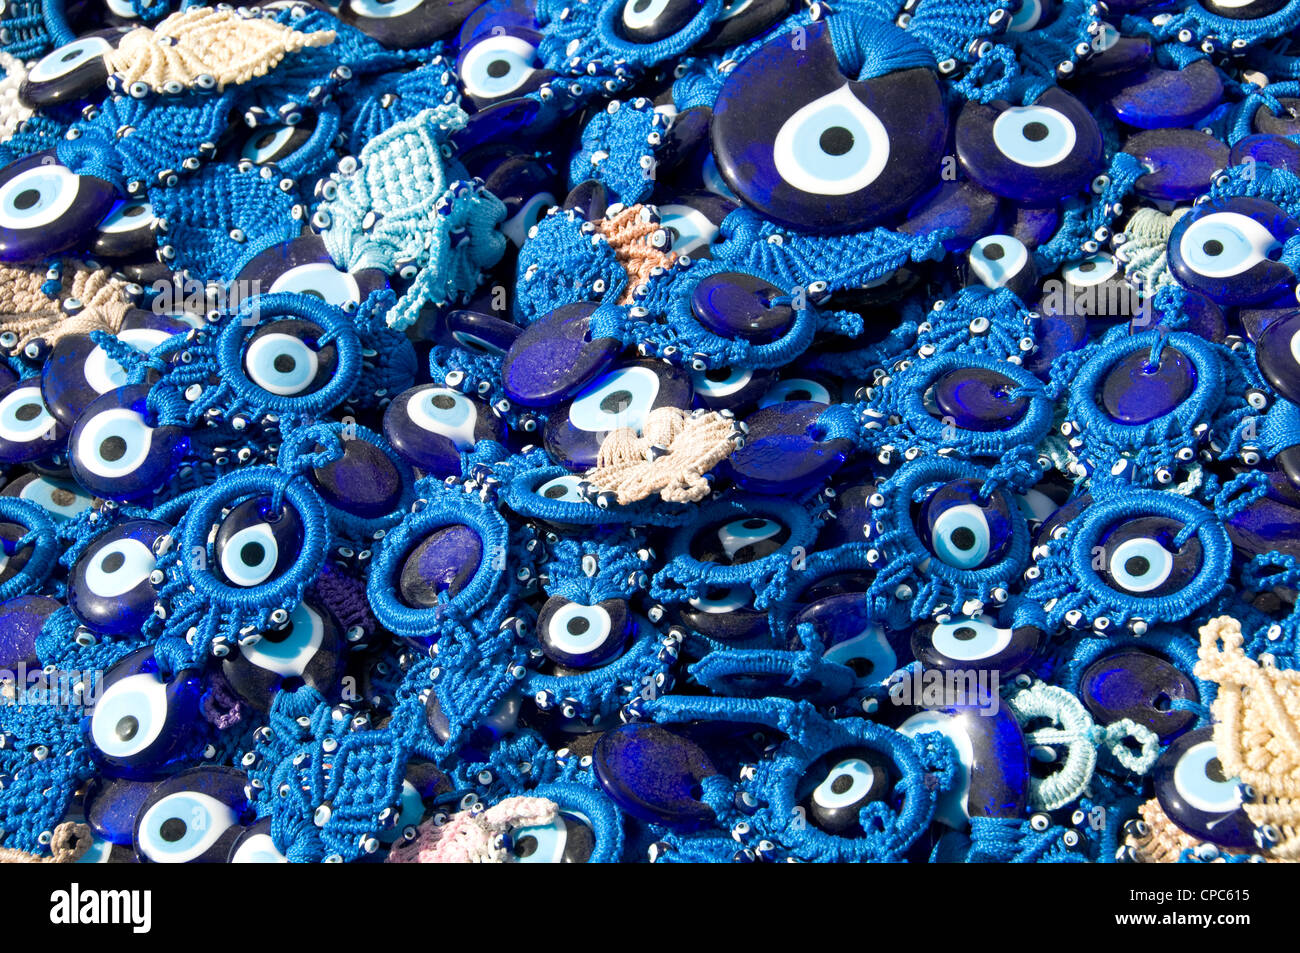 Amulettes en forme de l'œil (nazars) censées protéger contre le mauvais œil - Turquie Banque D'Images